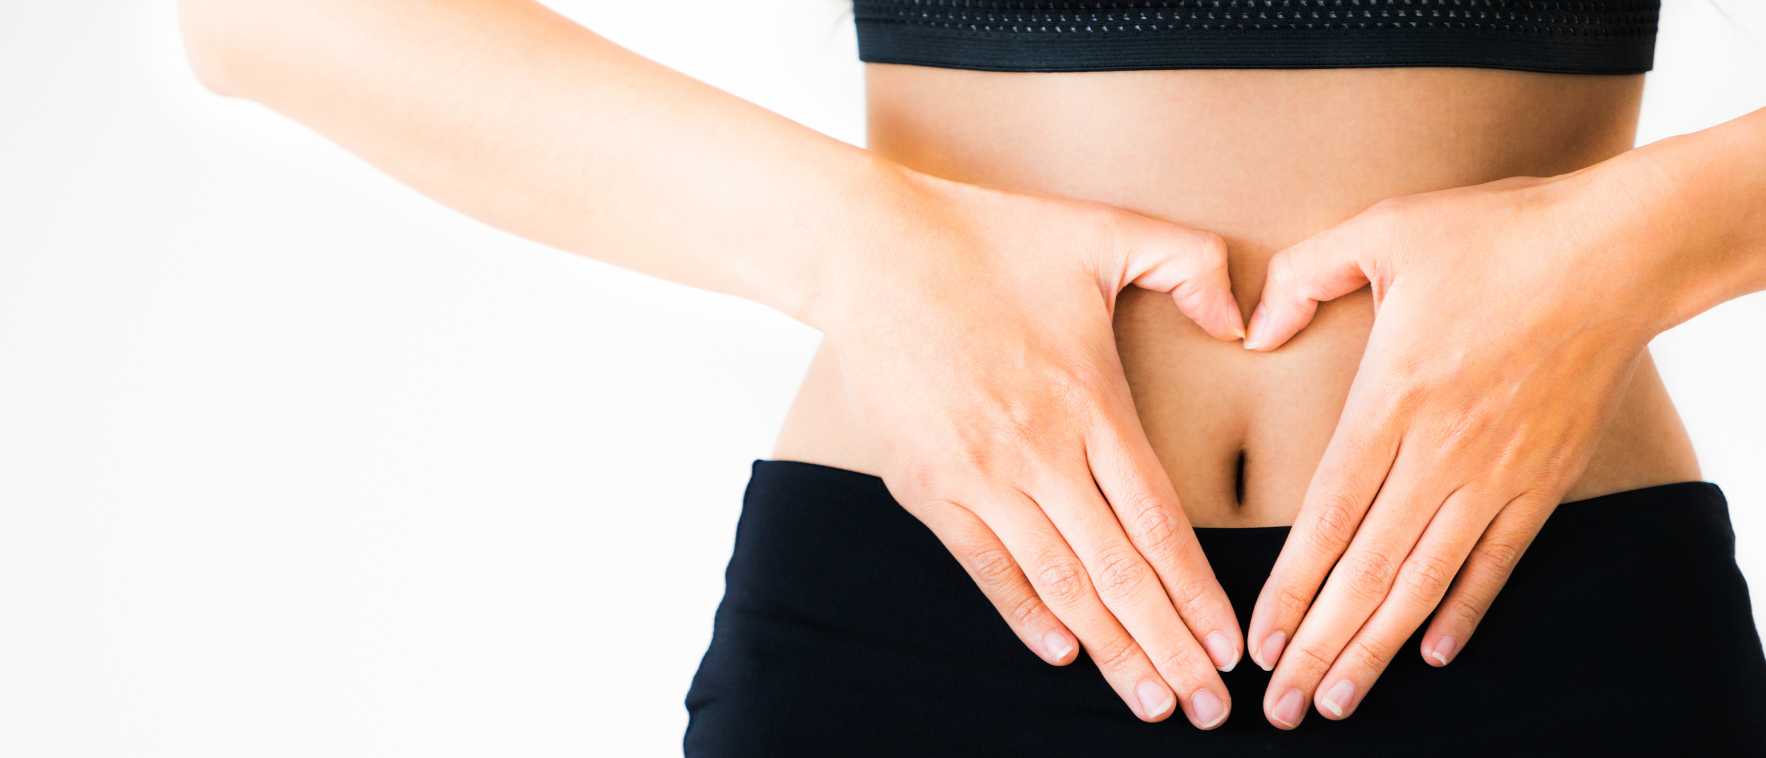 ejercicios hipopresivos en el postparto para la zona abdominal